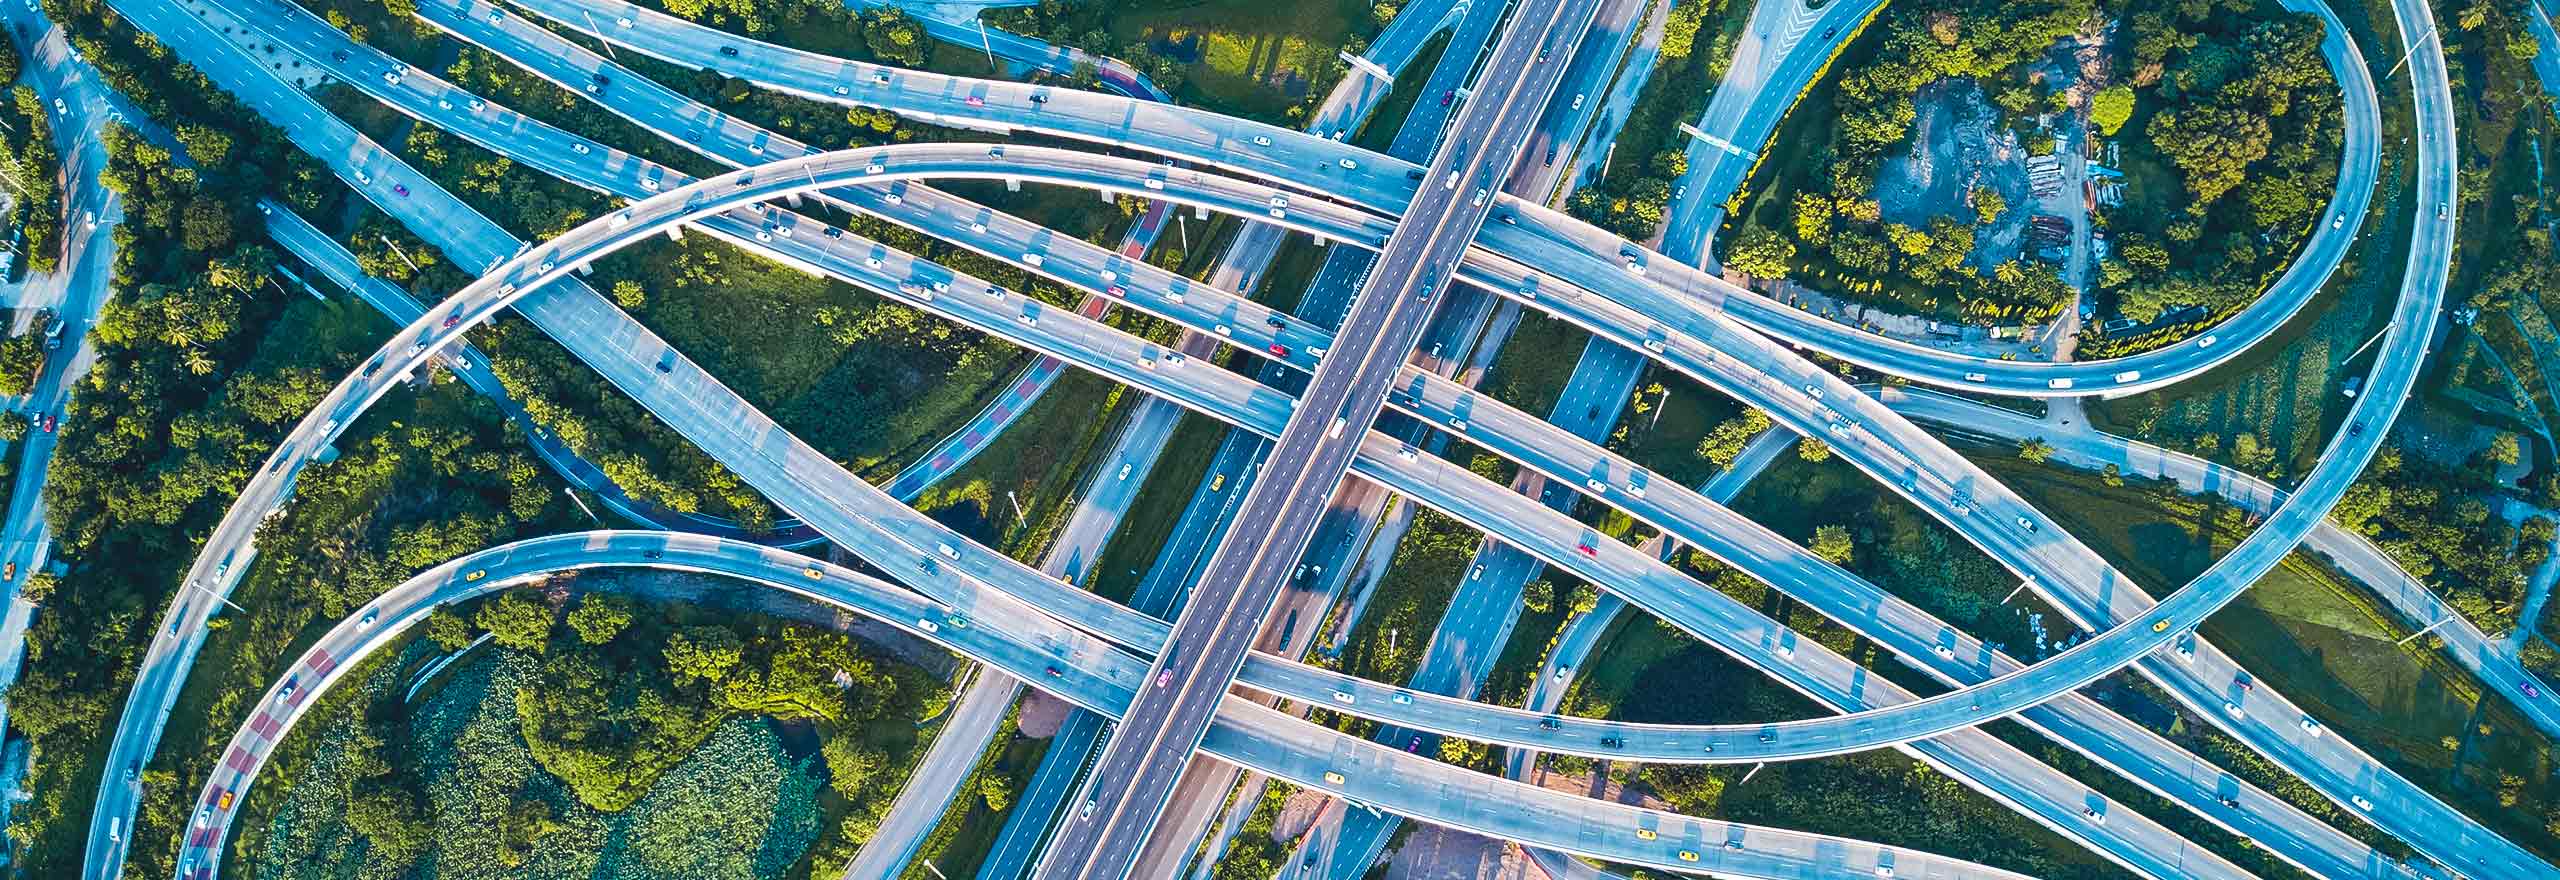 道路を高速で移動するせわしない都市交通のインターチェンジと高速道路の交差点の空中ドローンからの写真